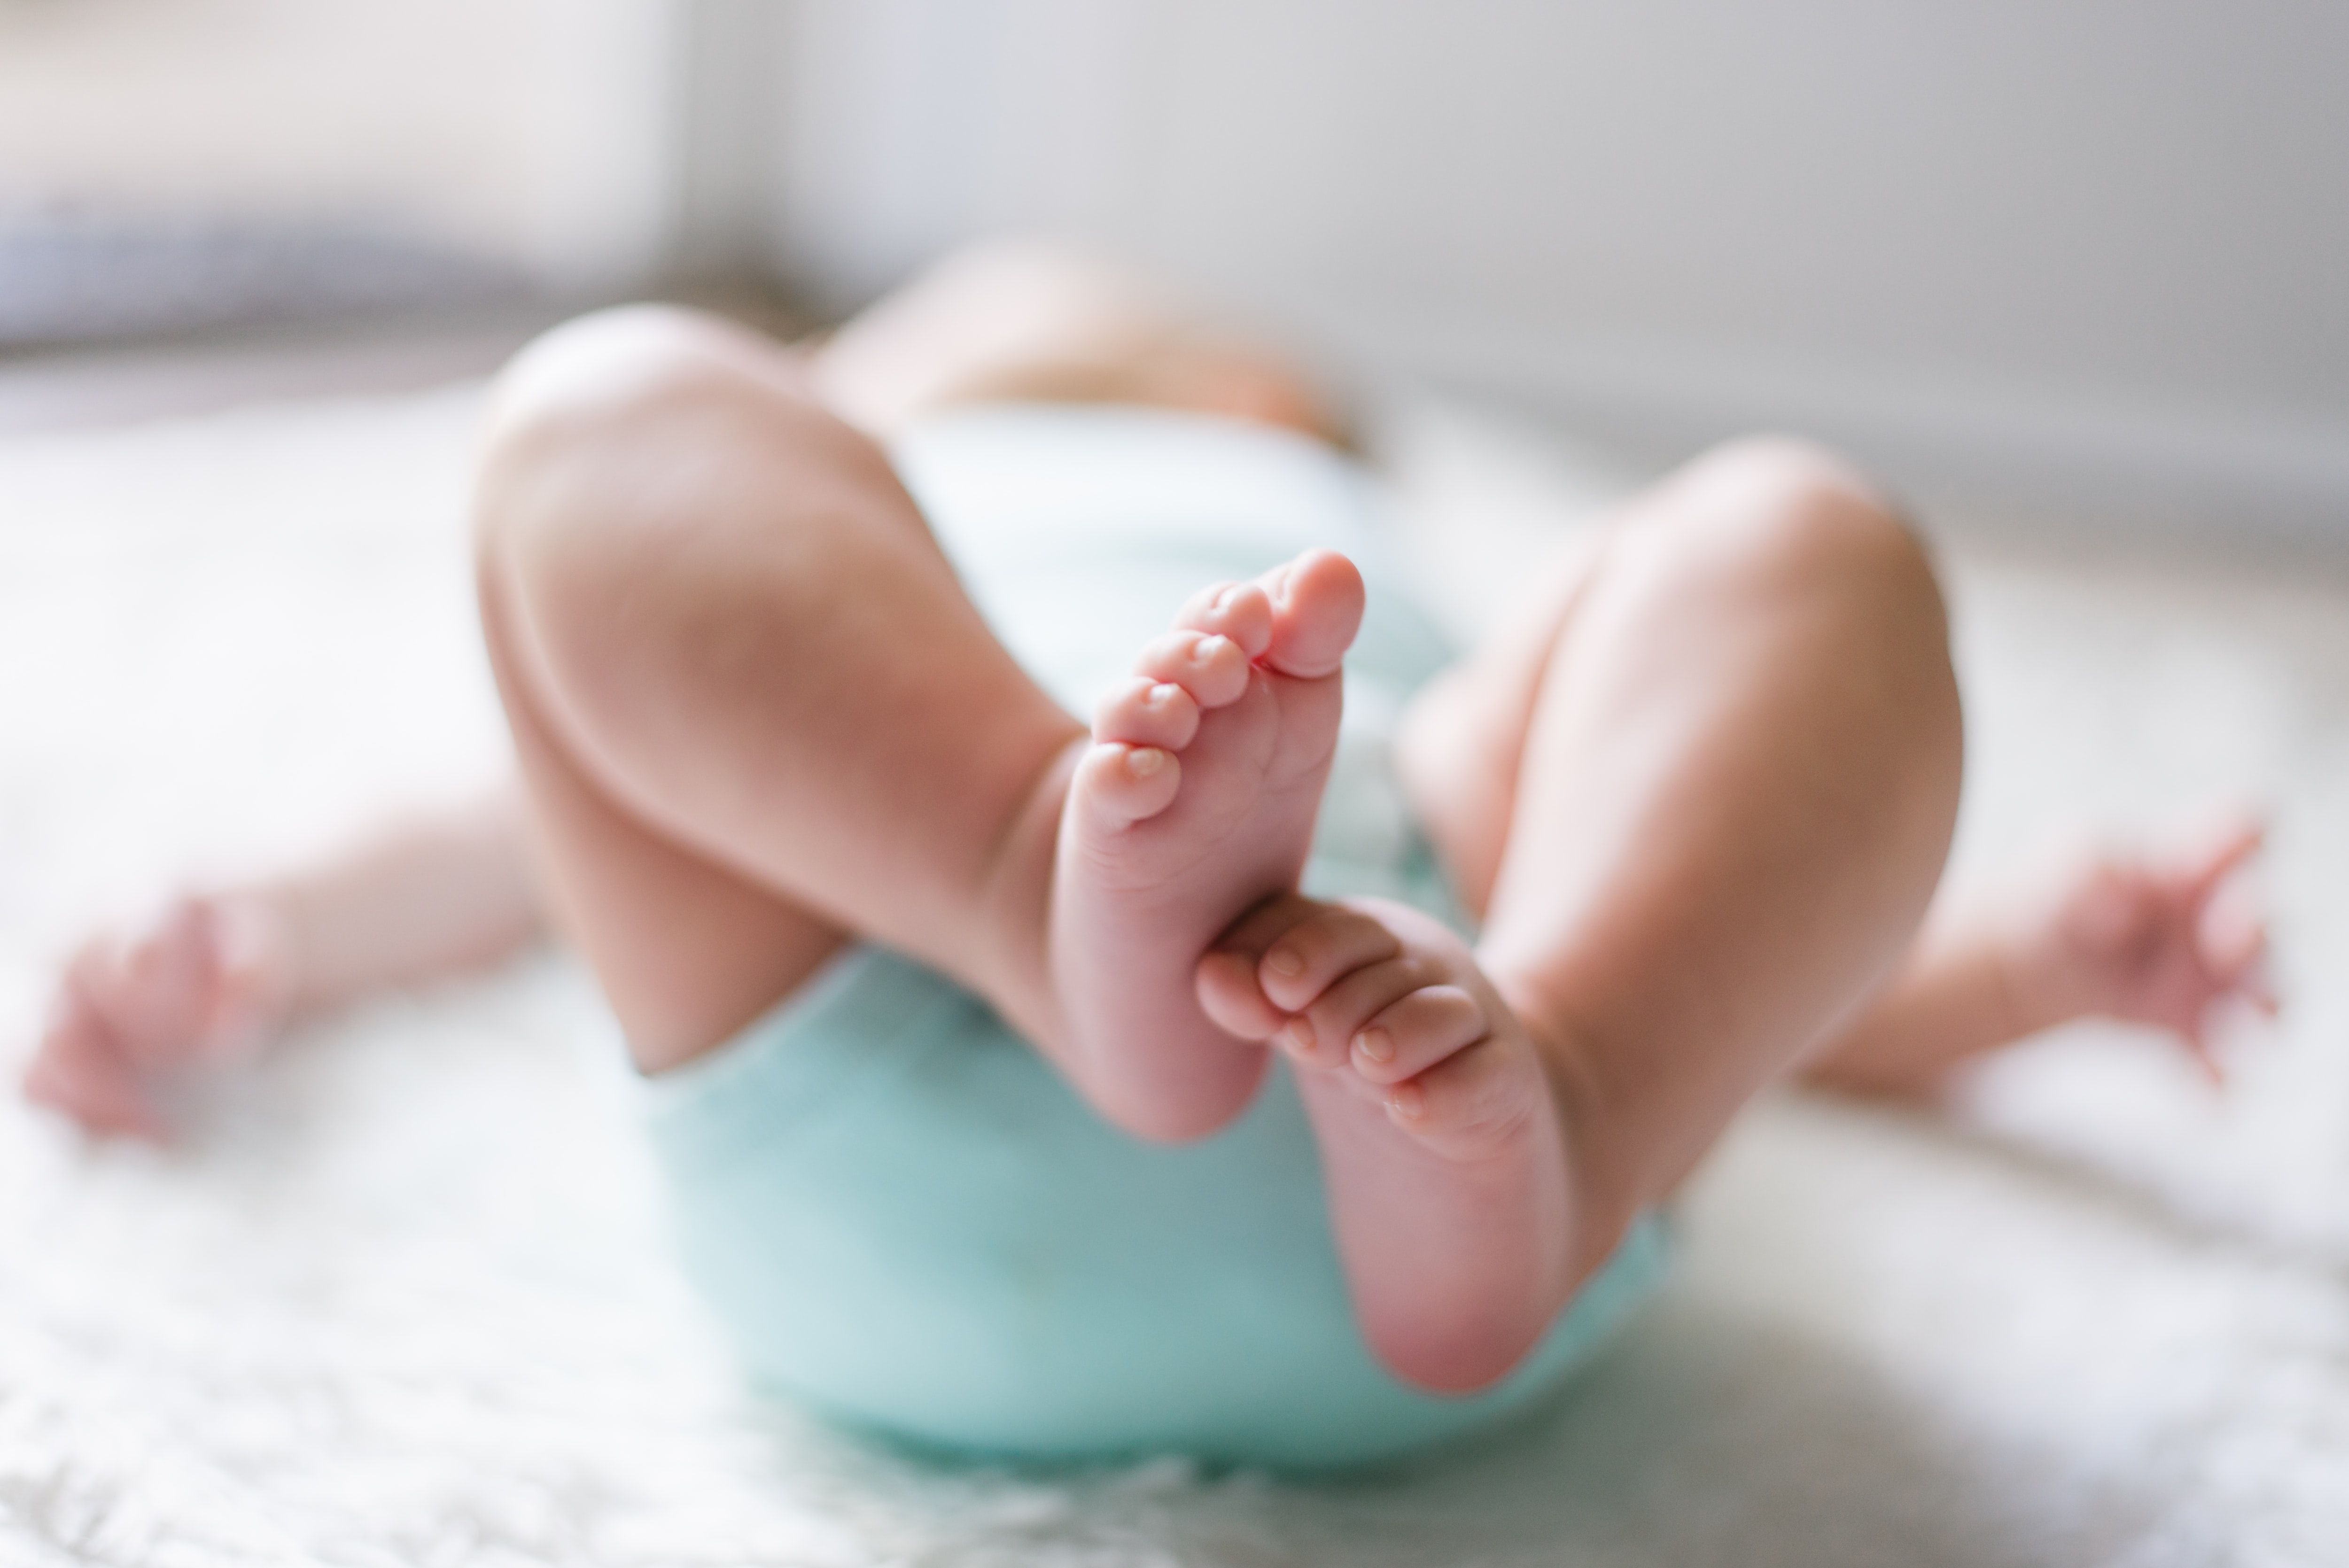  Covid-19 em bebês: como manter os cuidados para evitar a transmissão caso os pais sejam infectados